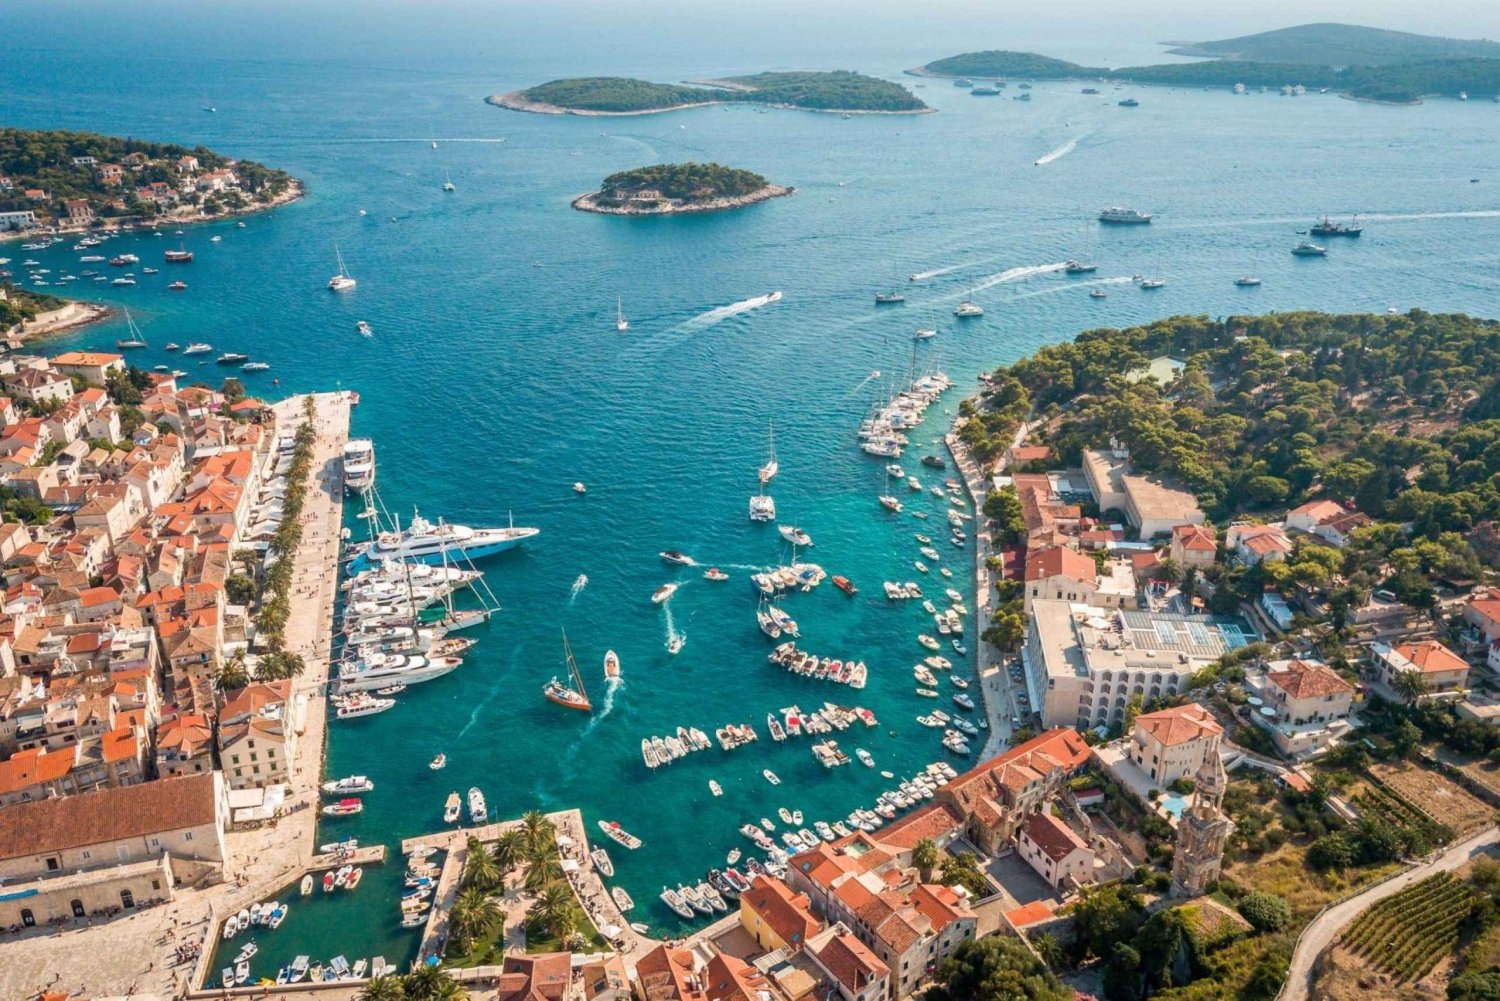 Z Trogiru/ Splitu: prywatna wycieczka łodzią po wyspach Hvar i Pakleni